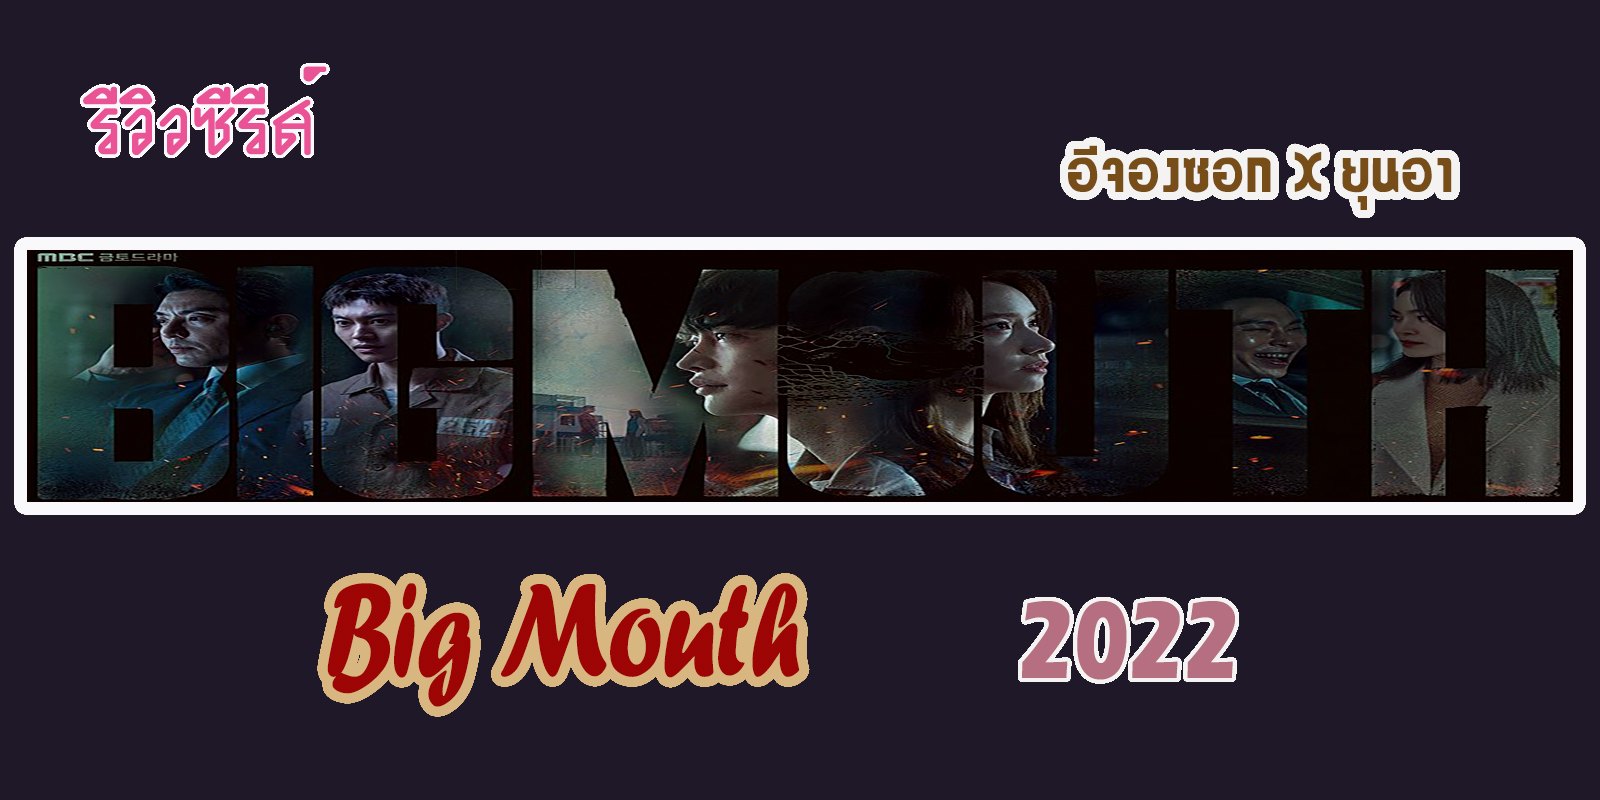 รีวิวซีรีส์ Big Mouth (2022)  อีจองซอก X ยุนอา